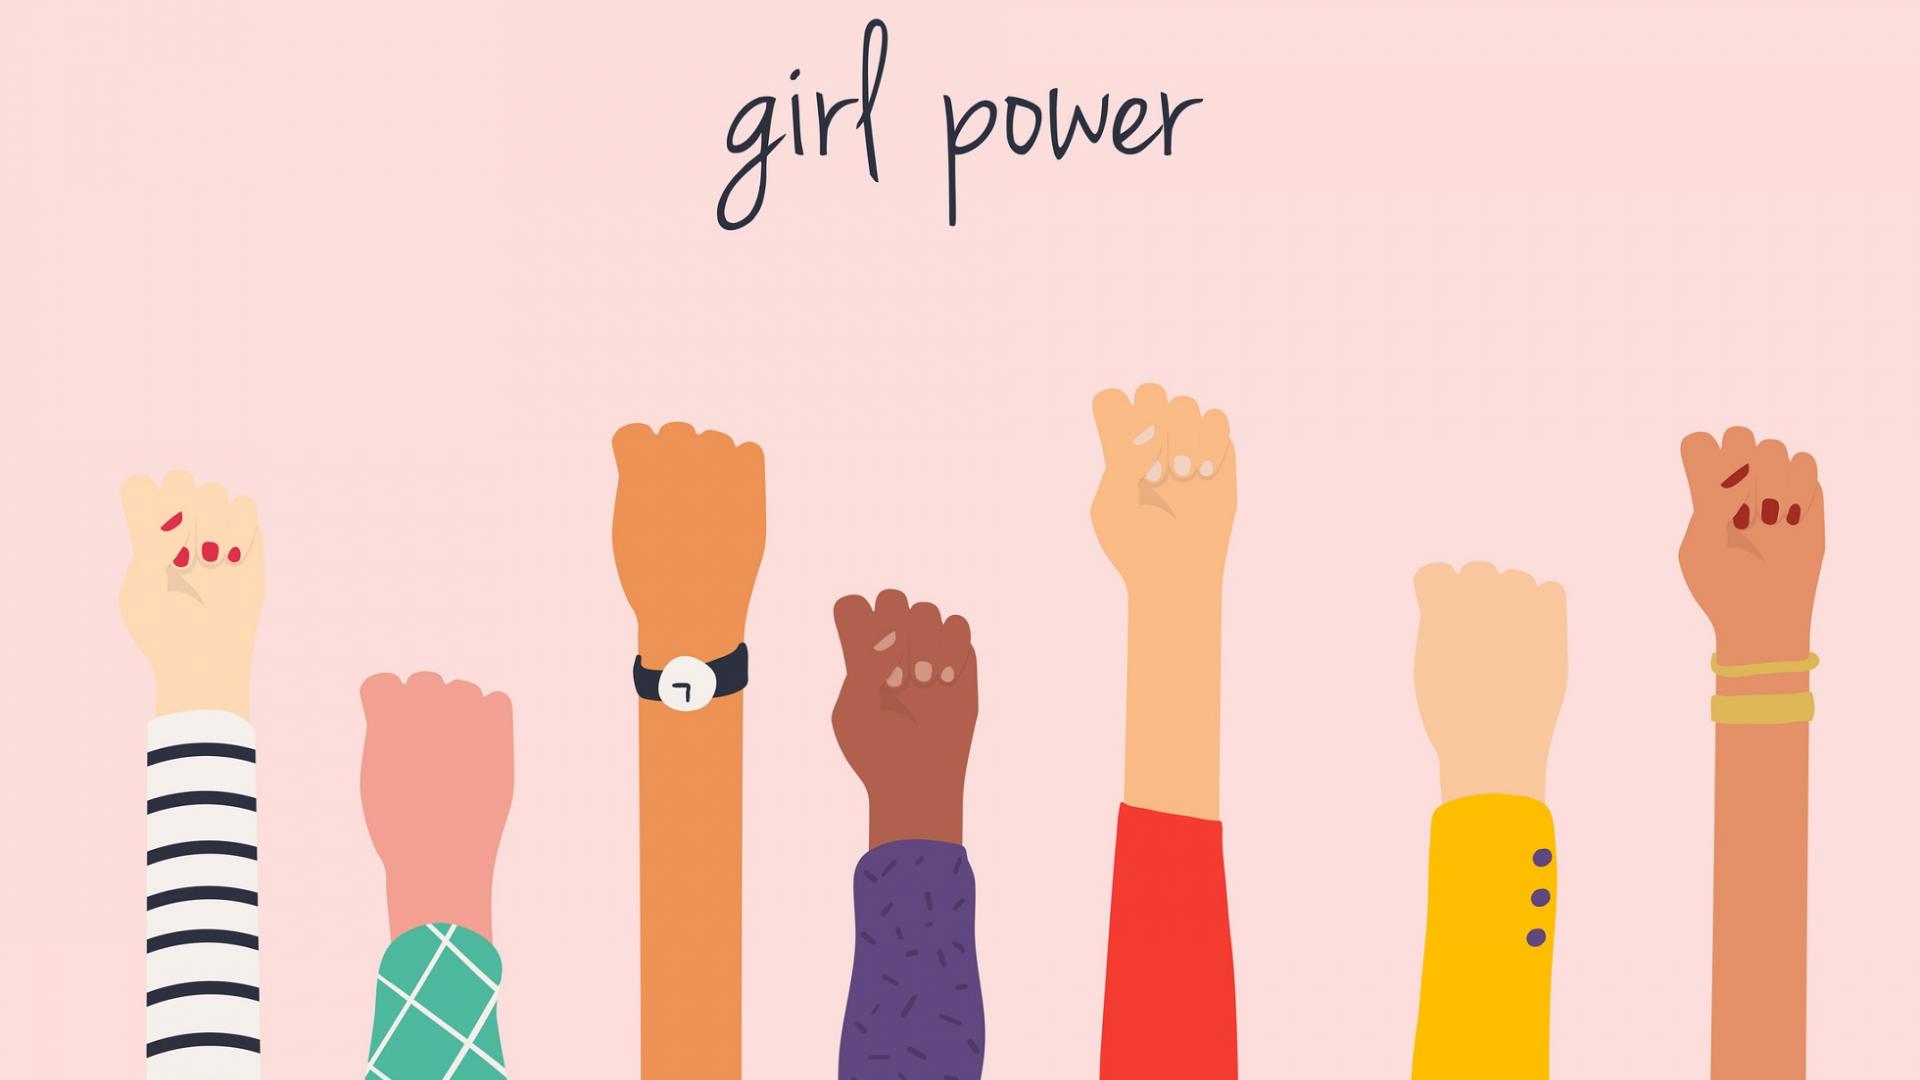 Bild zeigt erhobene weibliche Fäuste als Symbol für Girlpower vor rosafarbenen Hintergrund